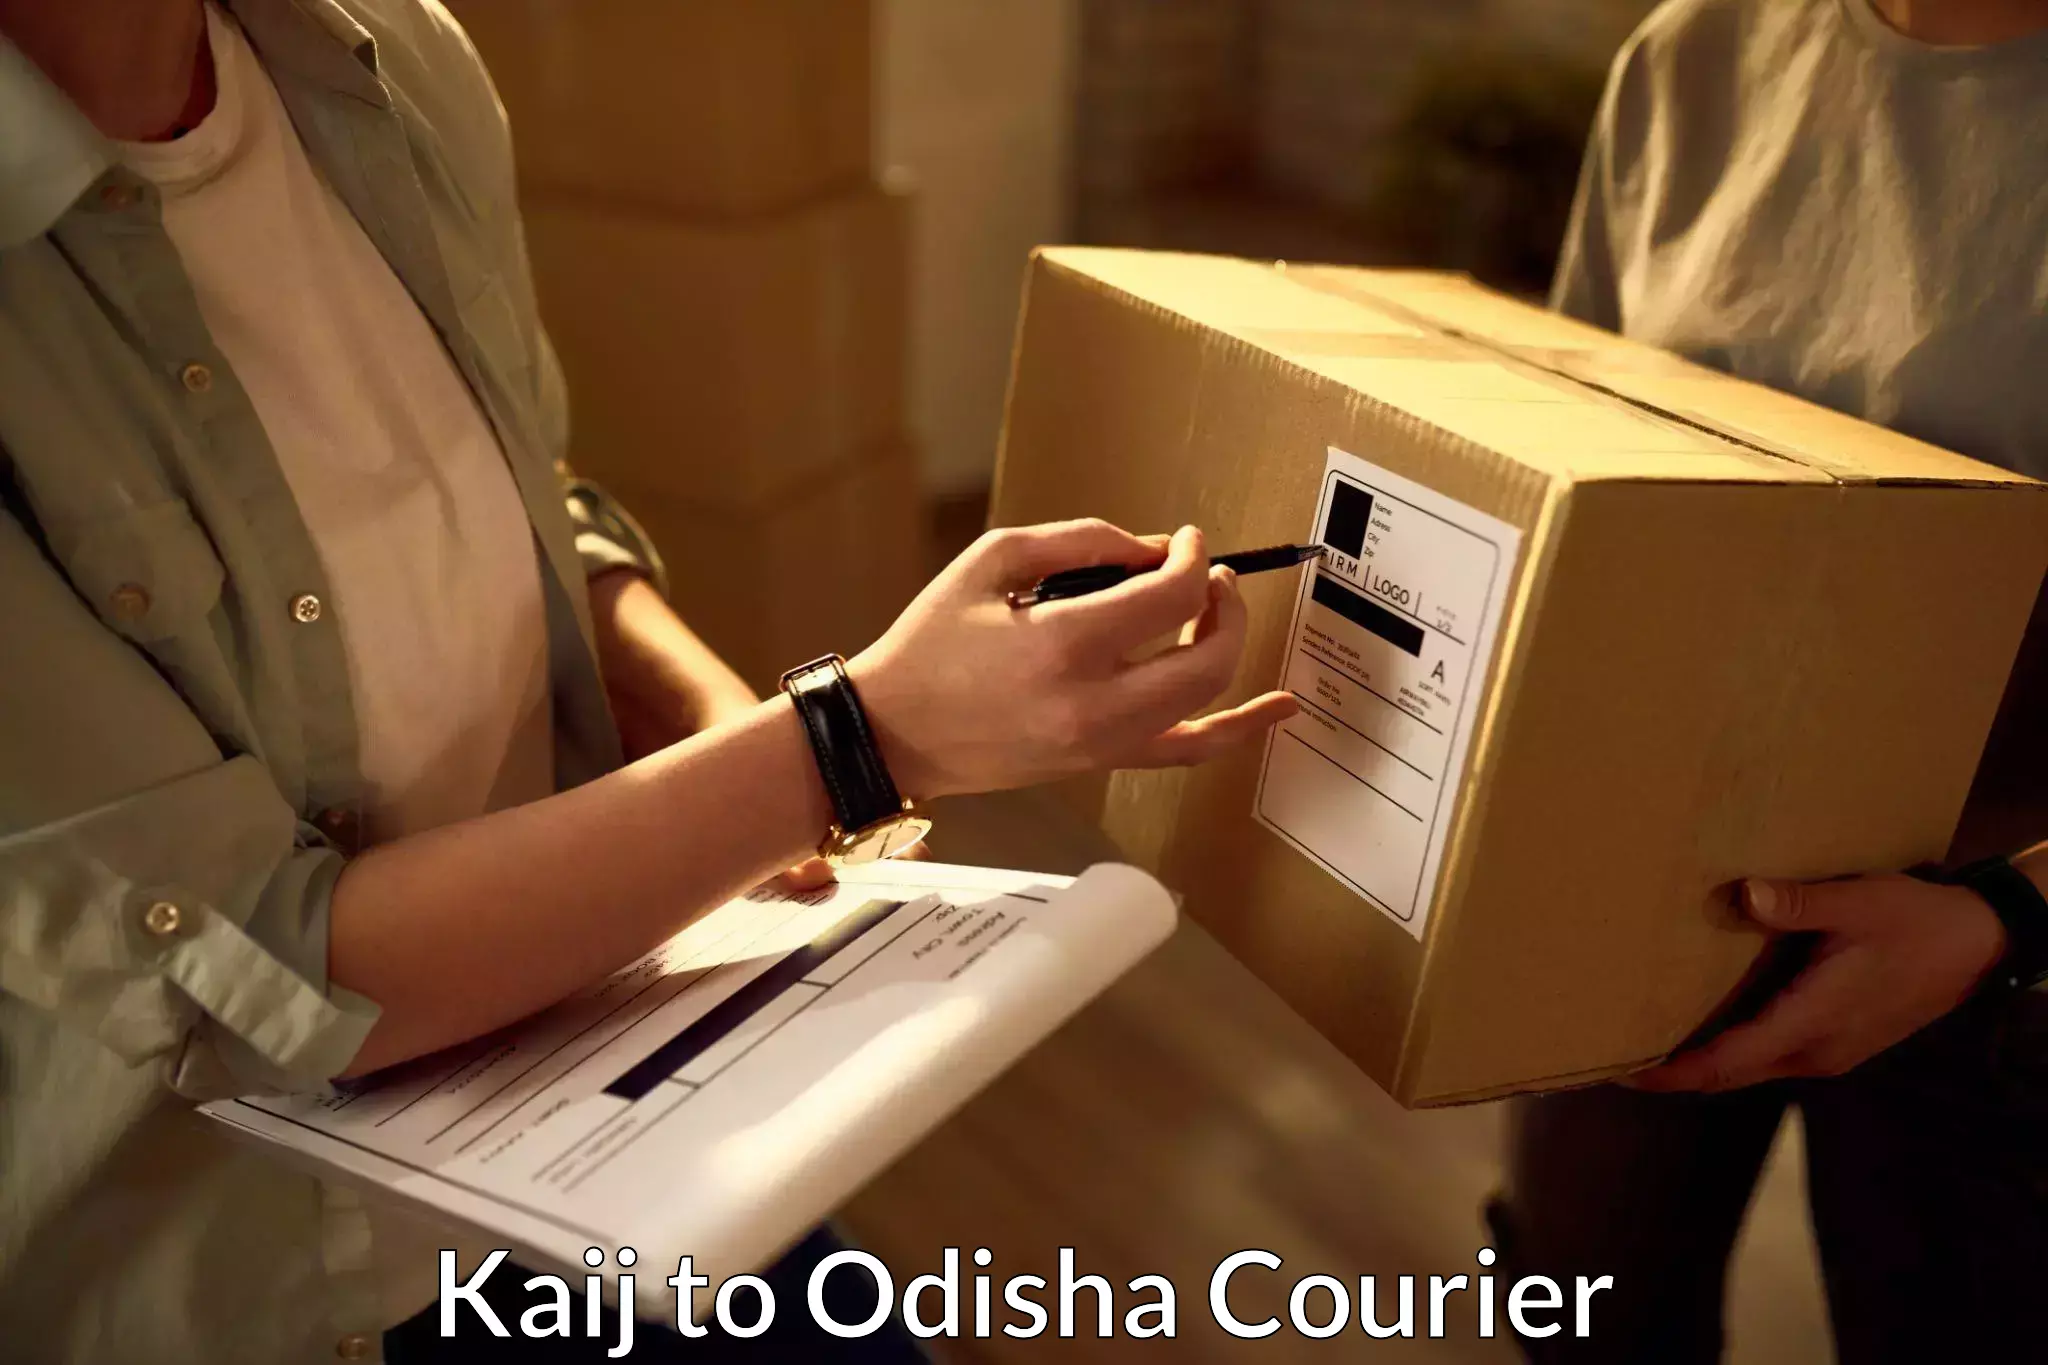 Door-to-door shipment in Kaij to Odisha